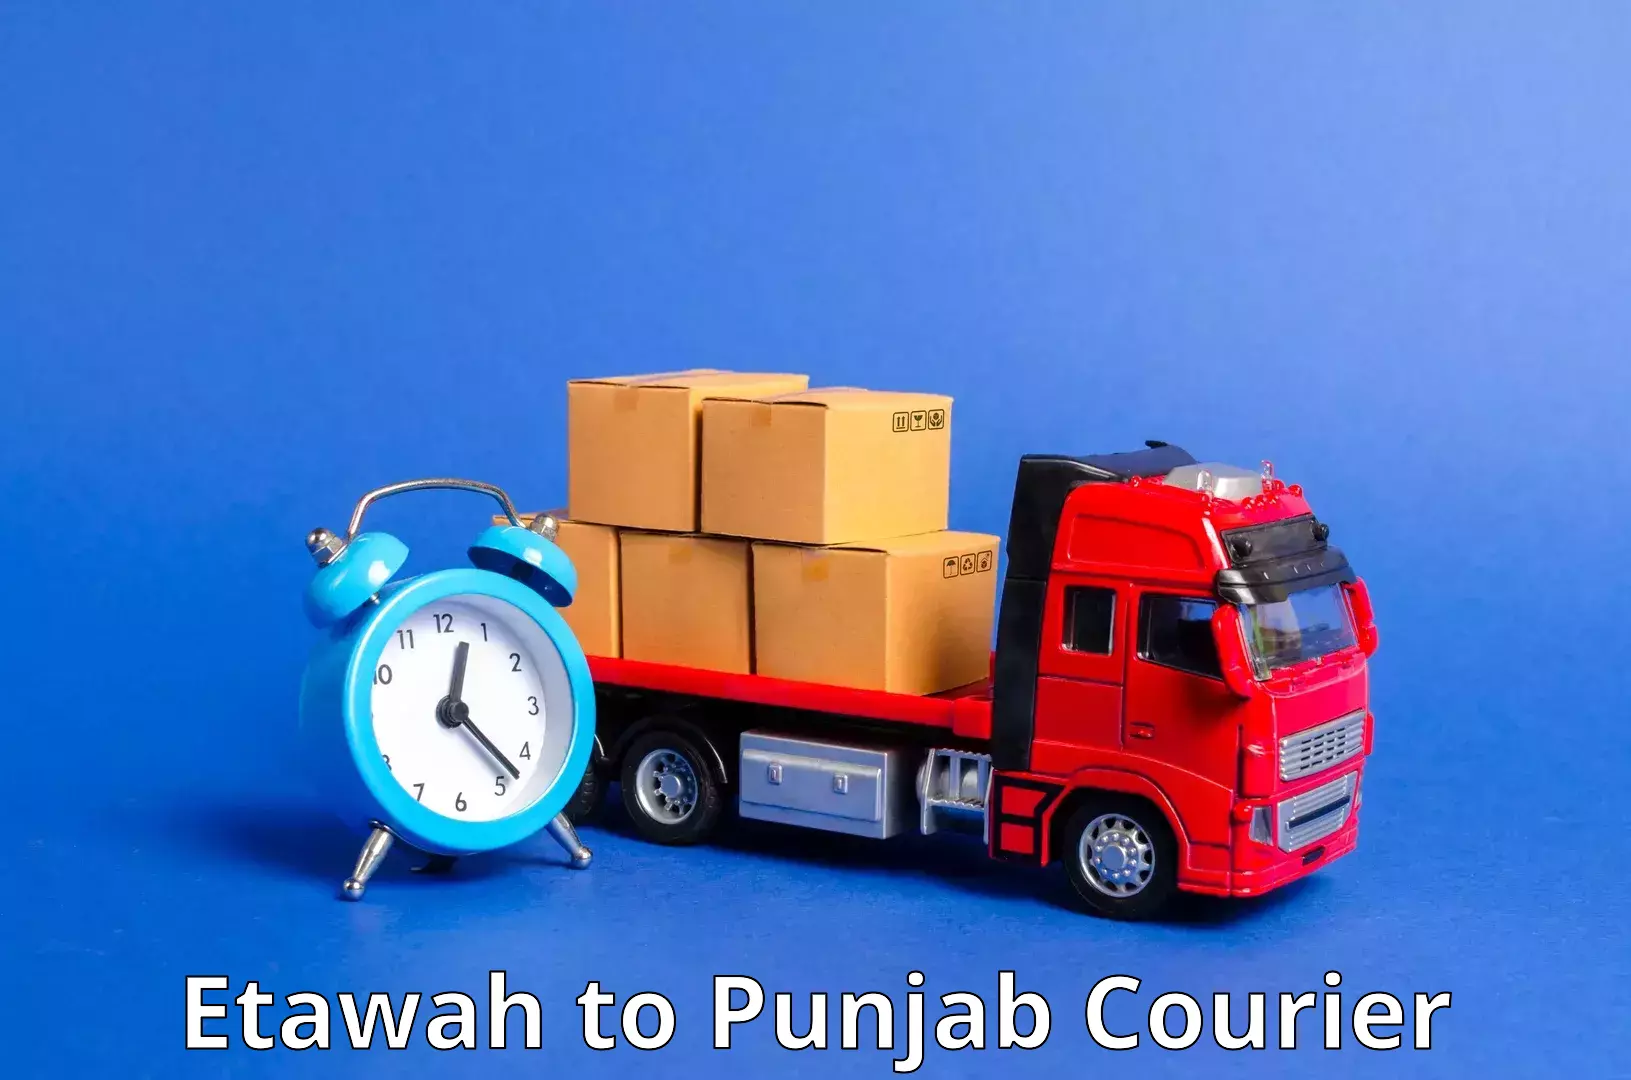 Flexible parcel services Etawah to Machhiwara